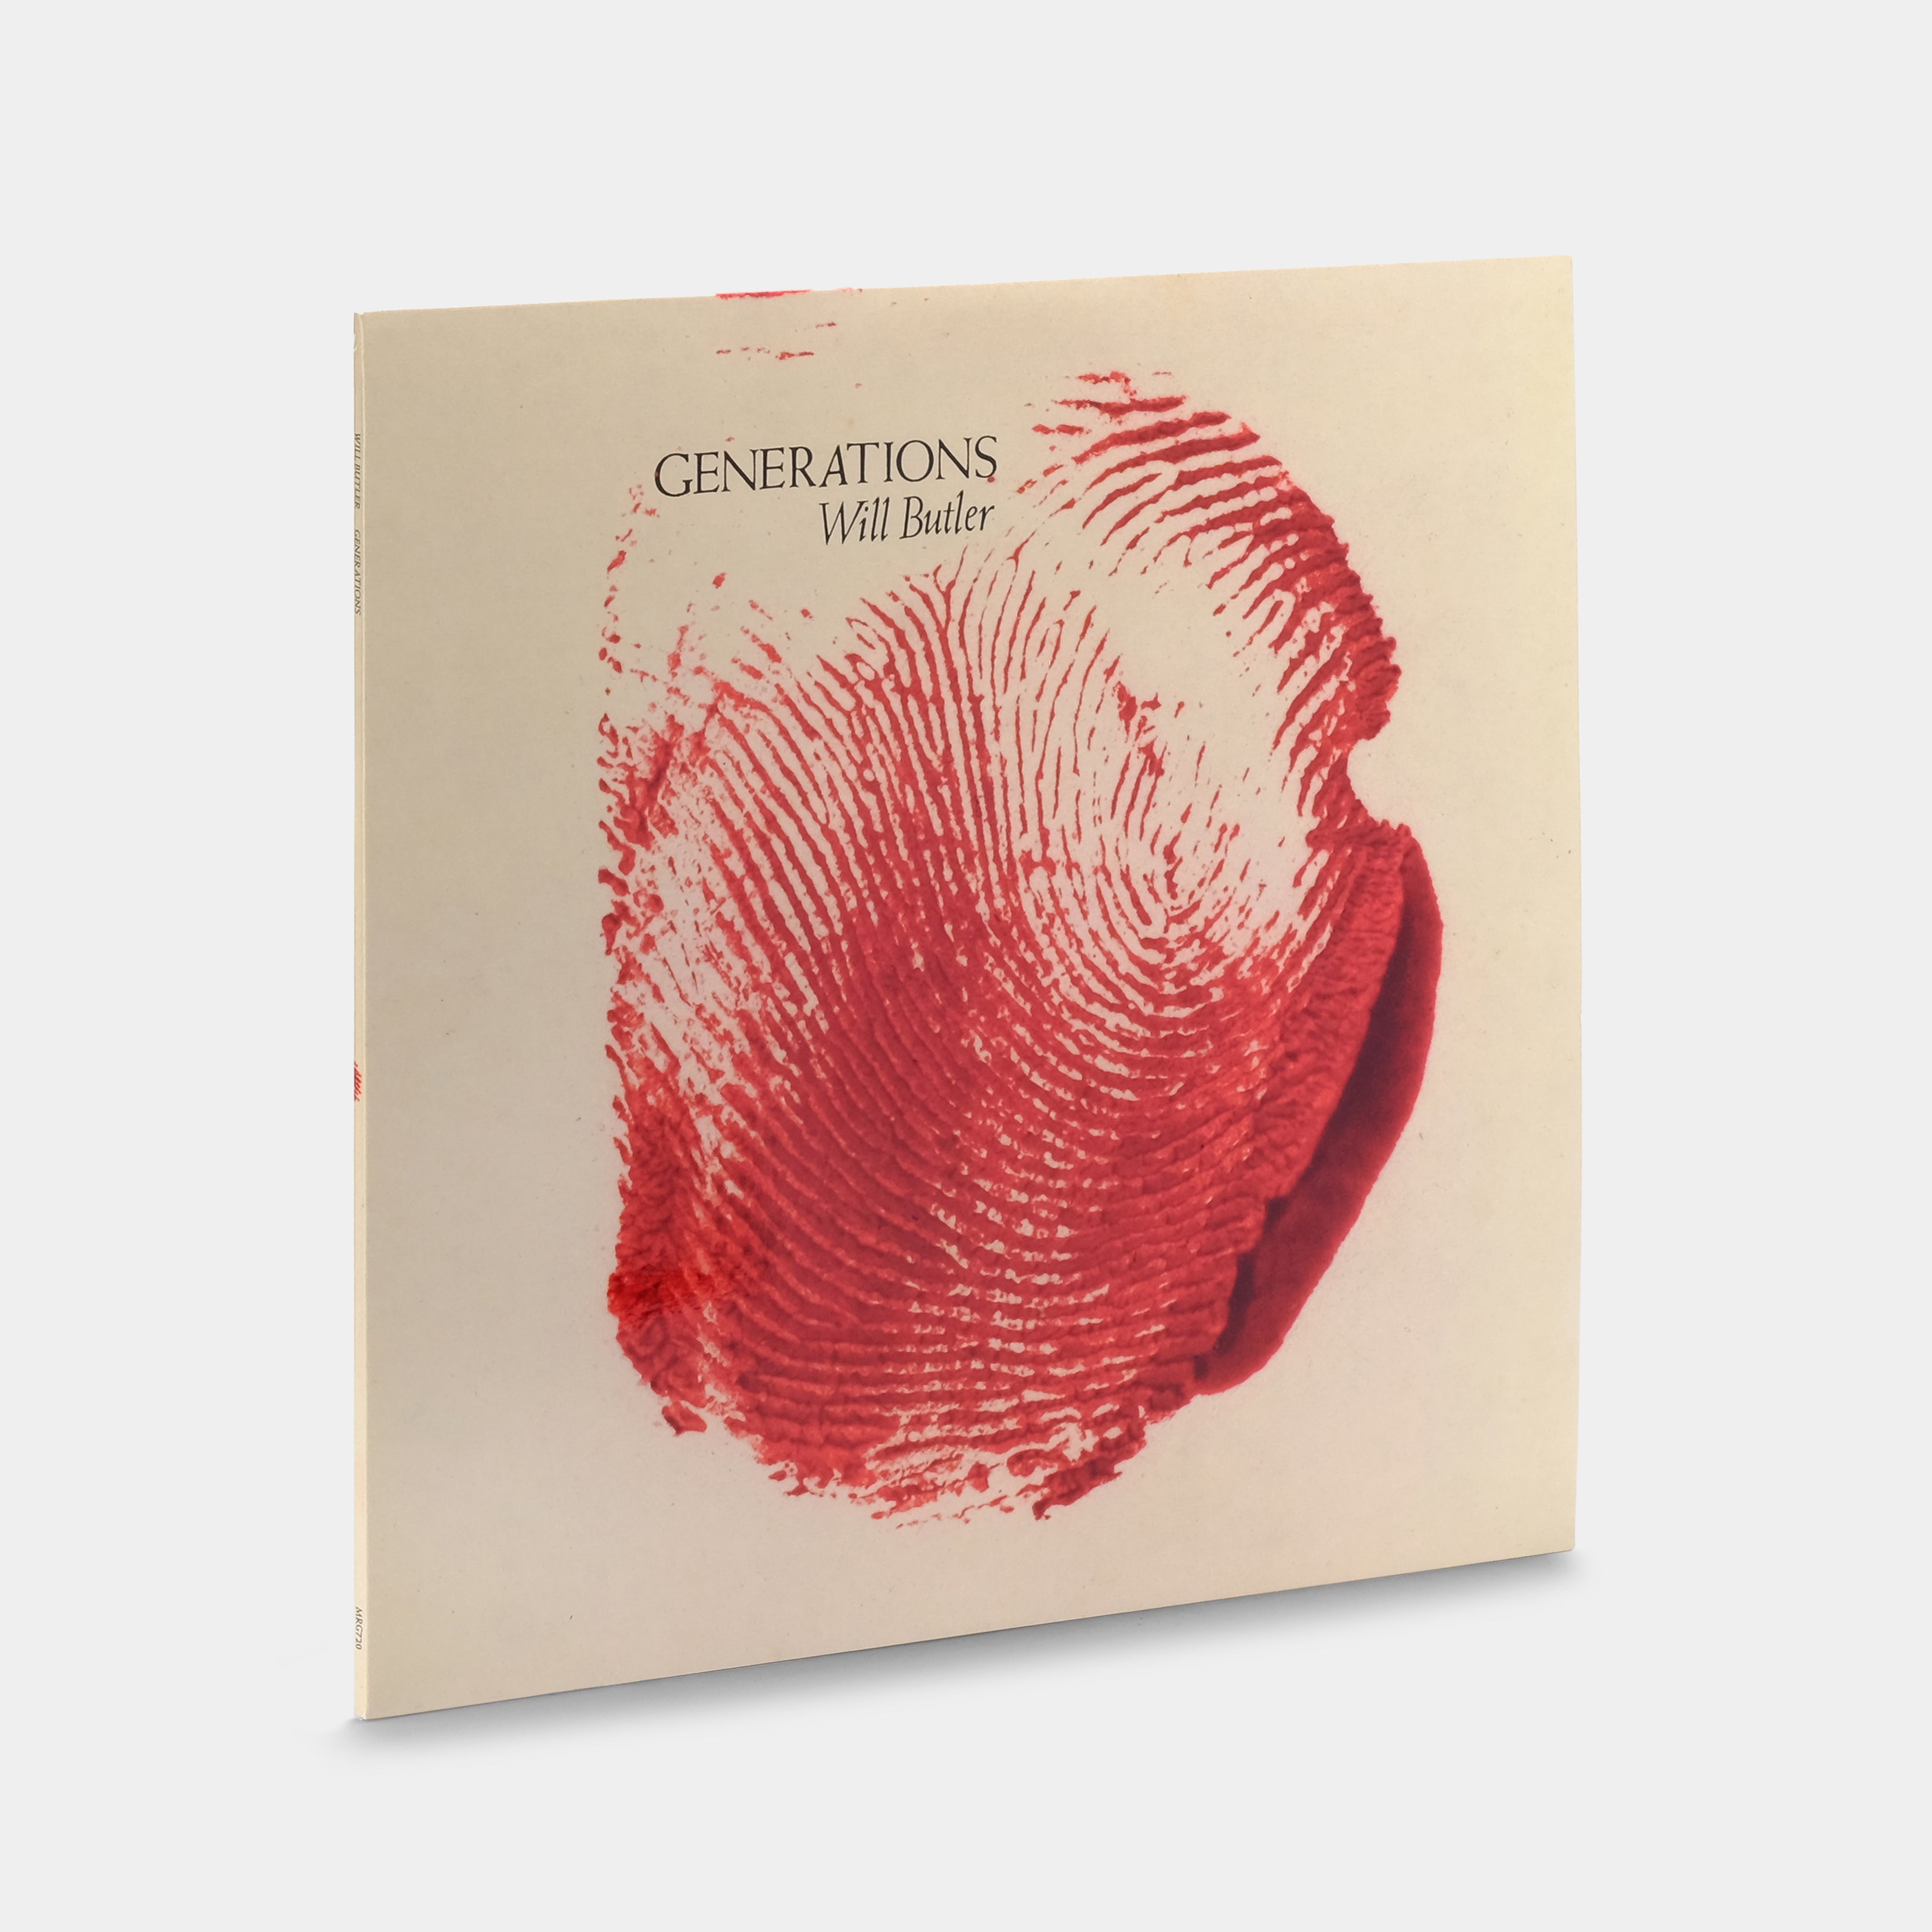 Will Butler - Generations LP Clear & Red Splatter Vinyl Record